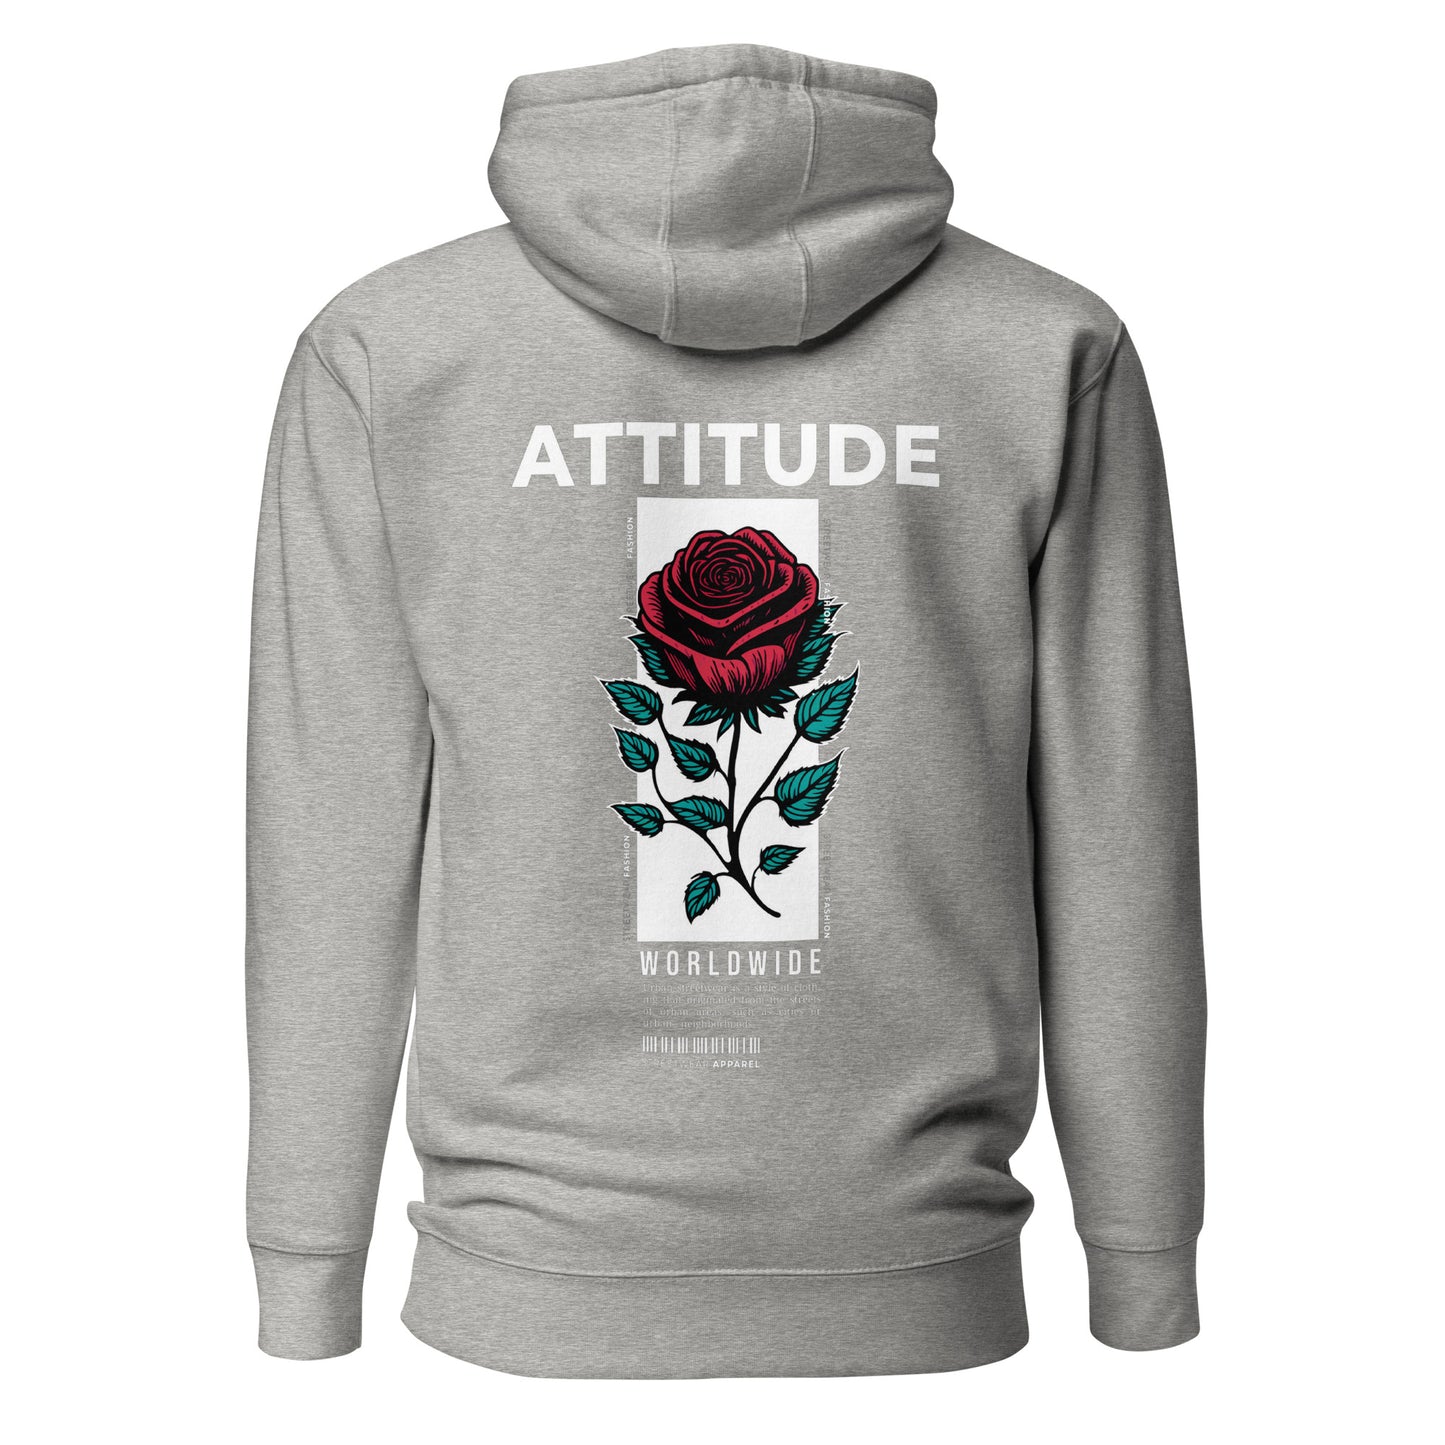 Premium Hoodie with Attitude Rose Symbol